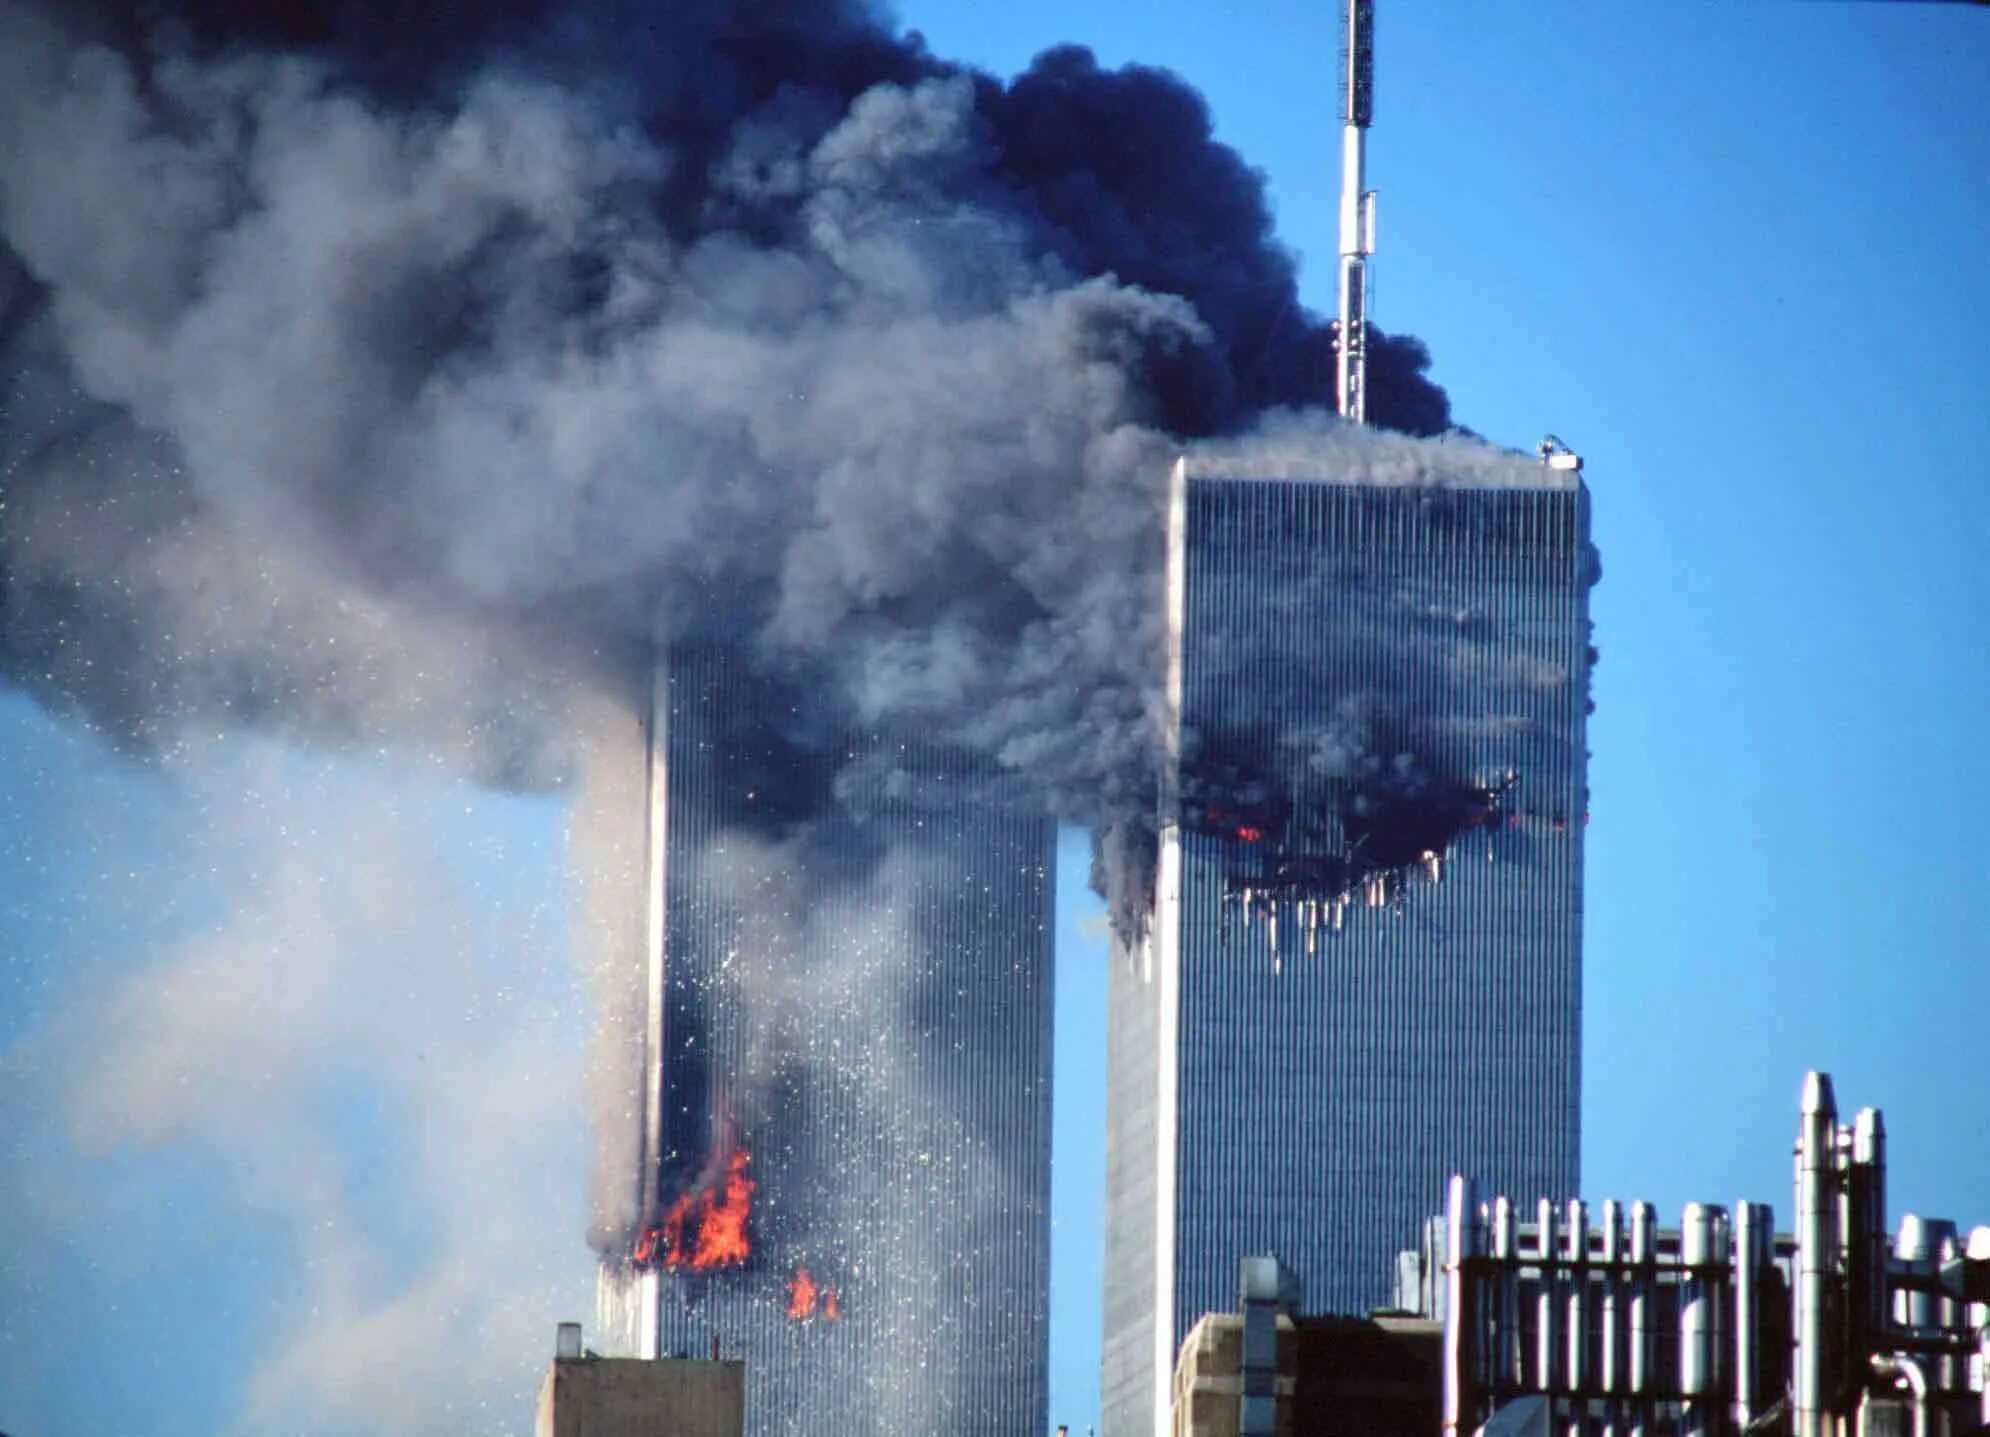 Когда был теракт башни близнецы. Башни-Близнецы 11 сентября 2001. Аль Каида 11 сентября 2001. ВТЦ Нью-Йорк башни Близнецы. Теракты 11 сентября 2001 года.